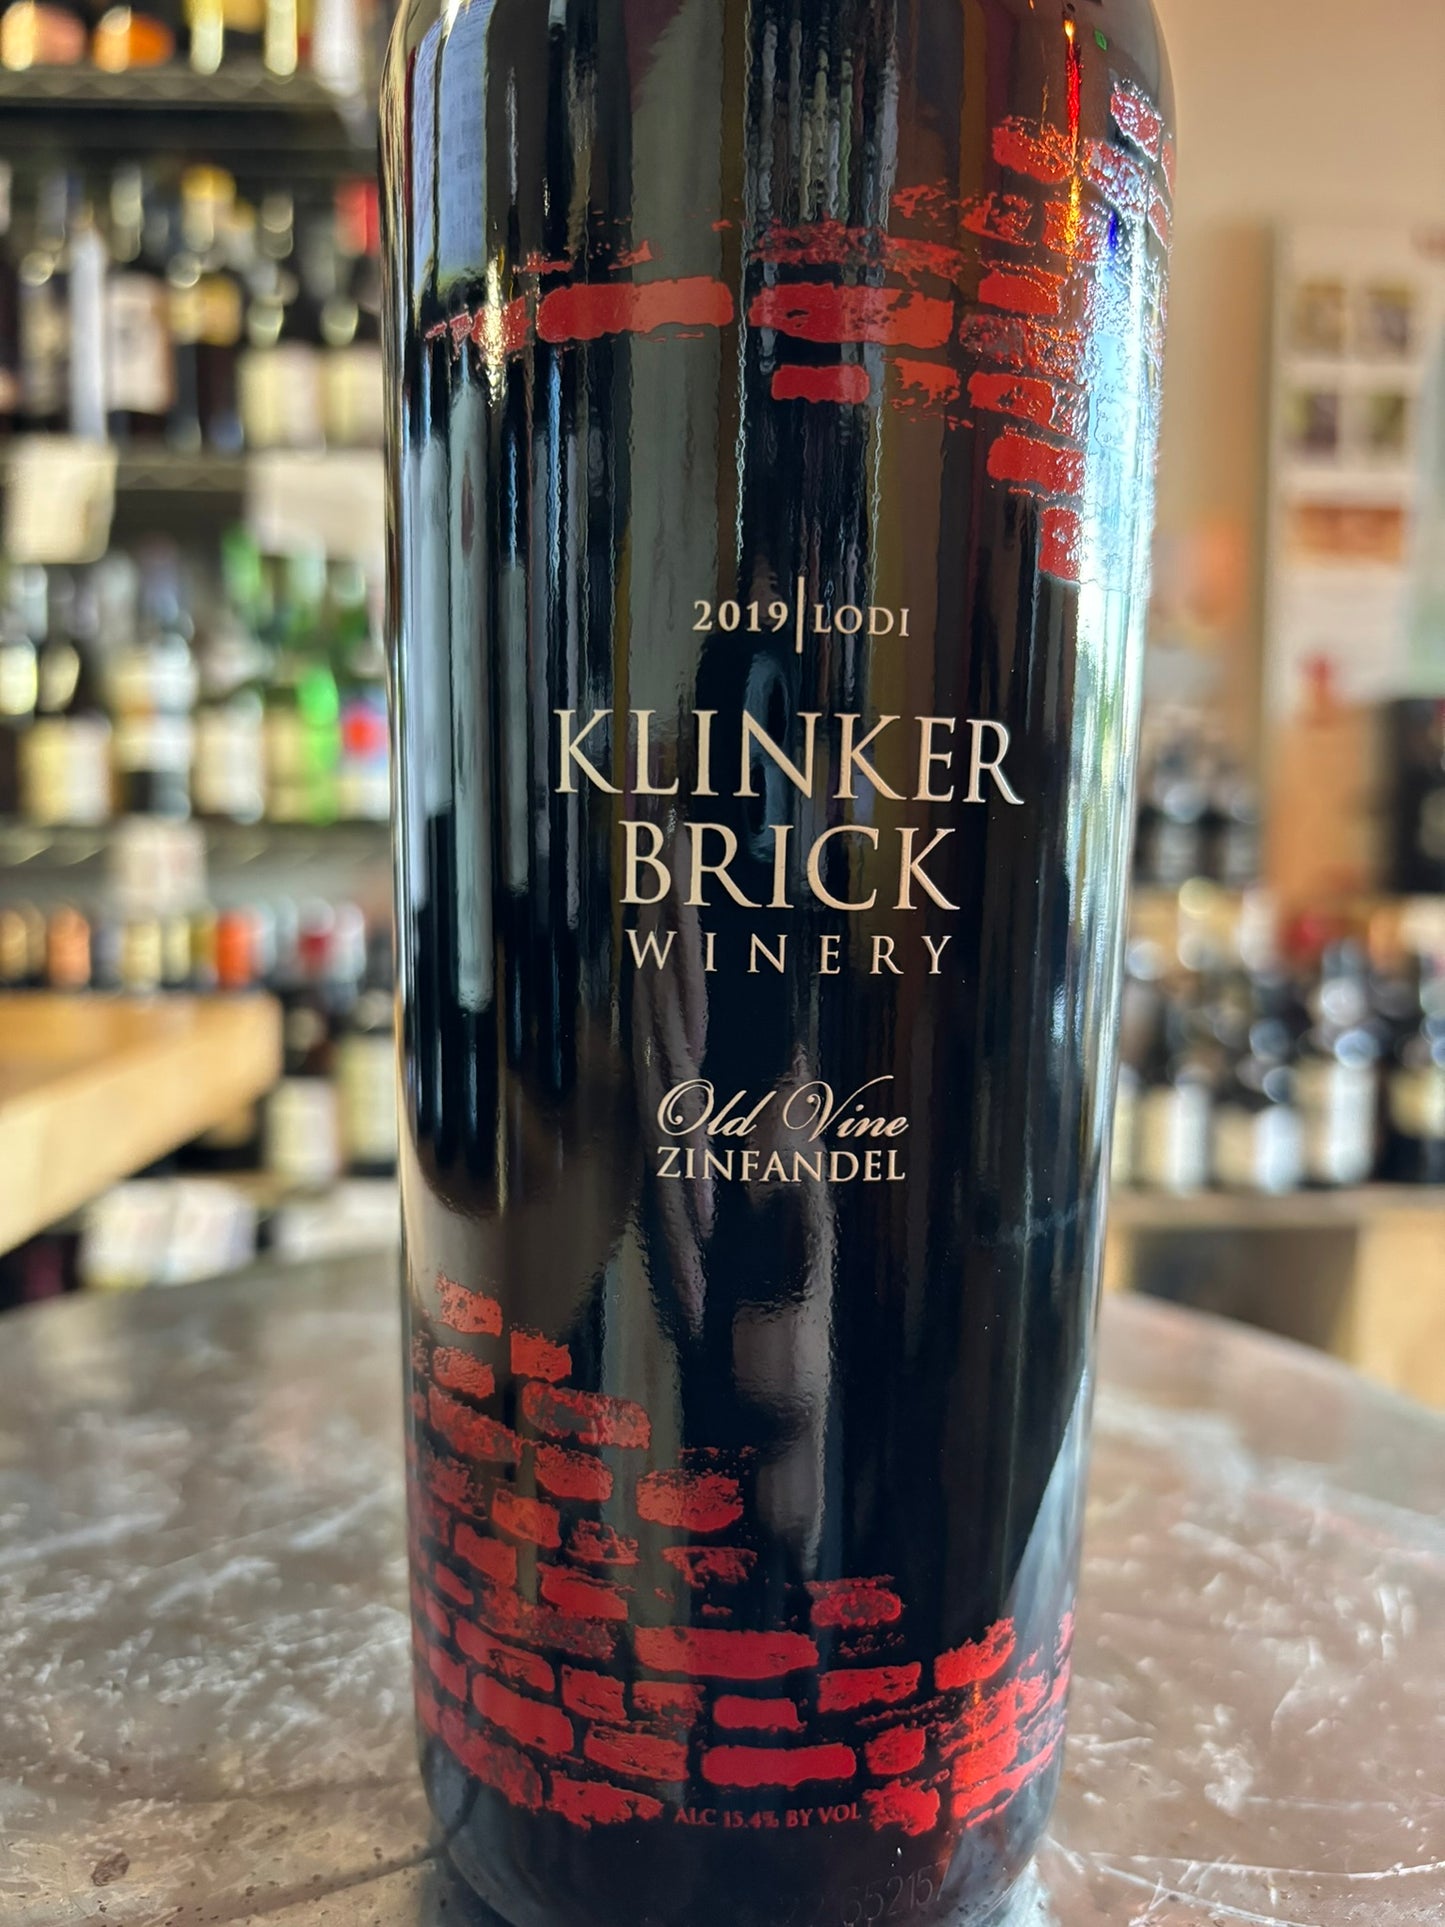 KLINKER BRICK WINERY 2019 Zinfandel (Lodi, California)